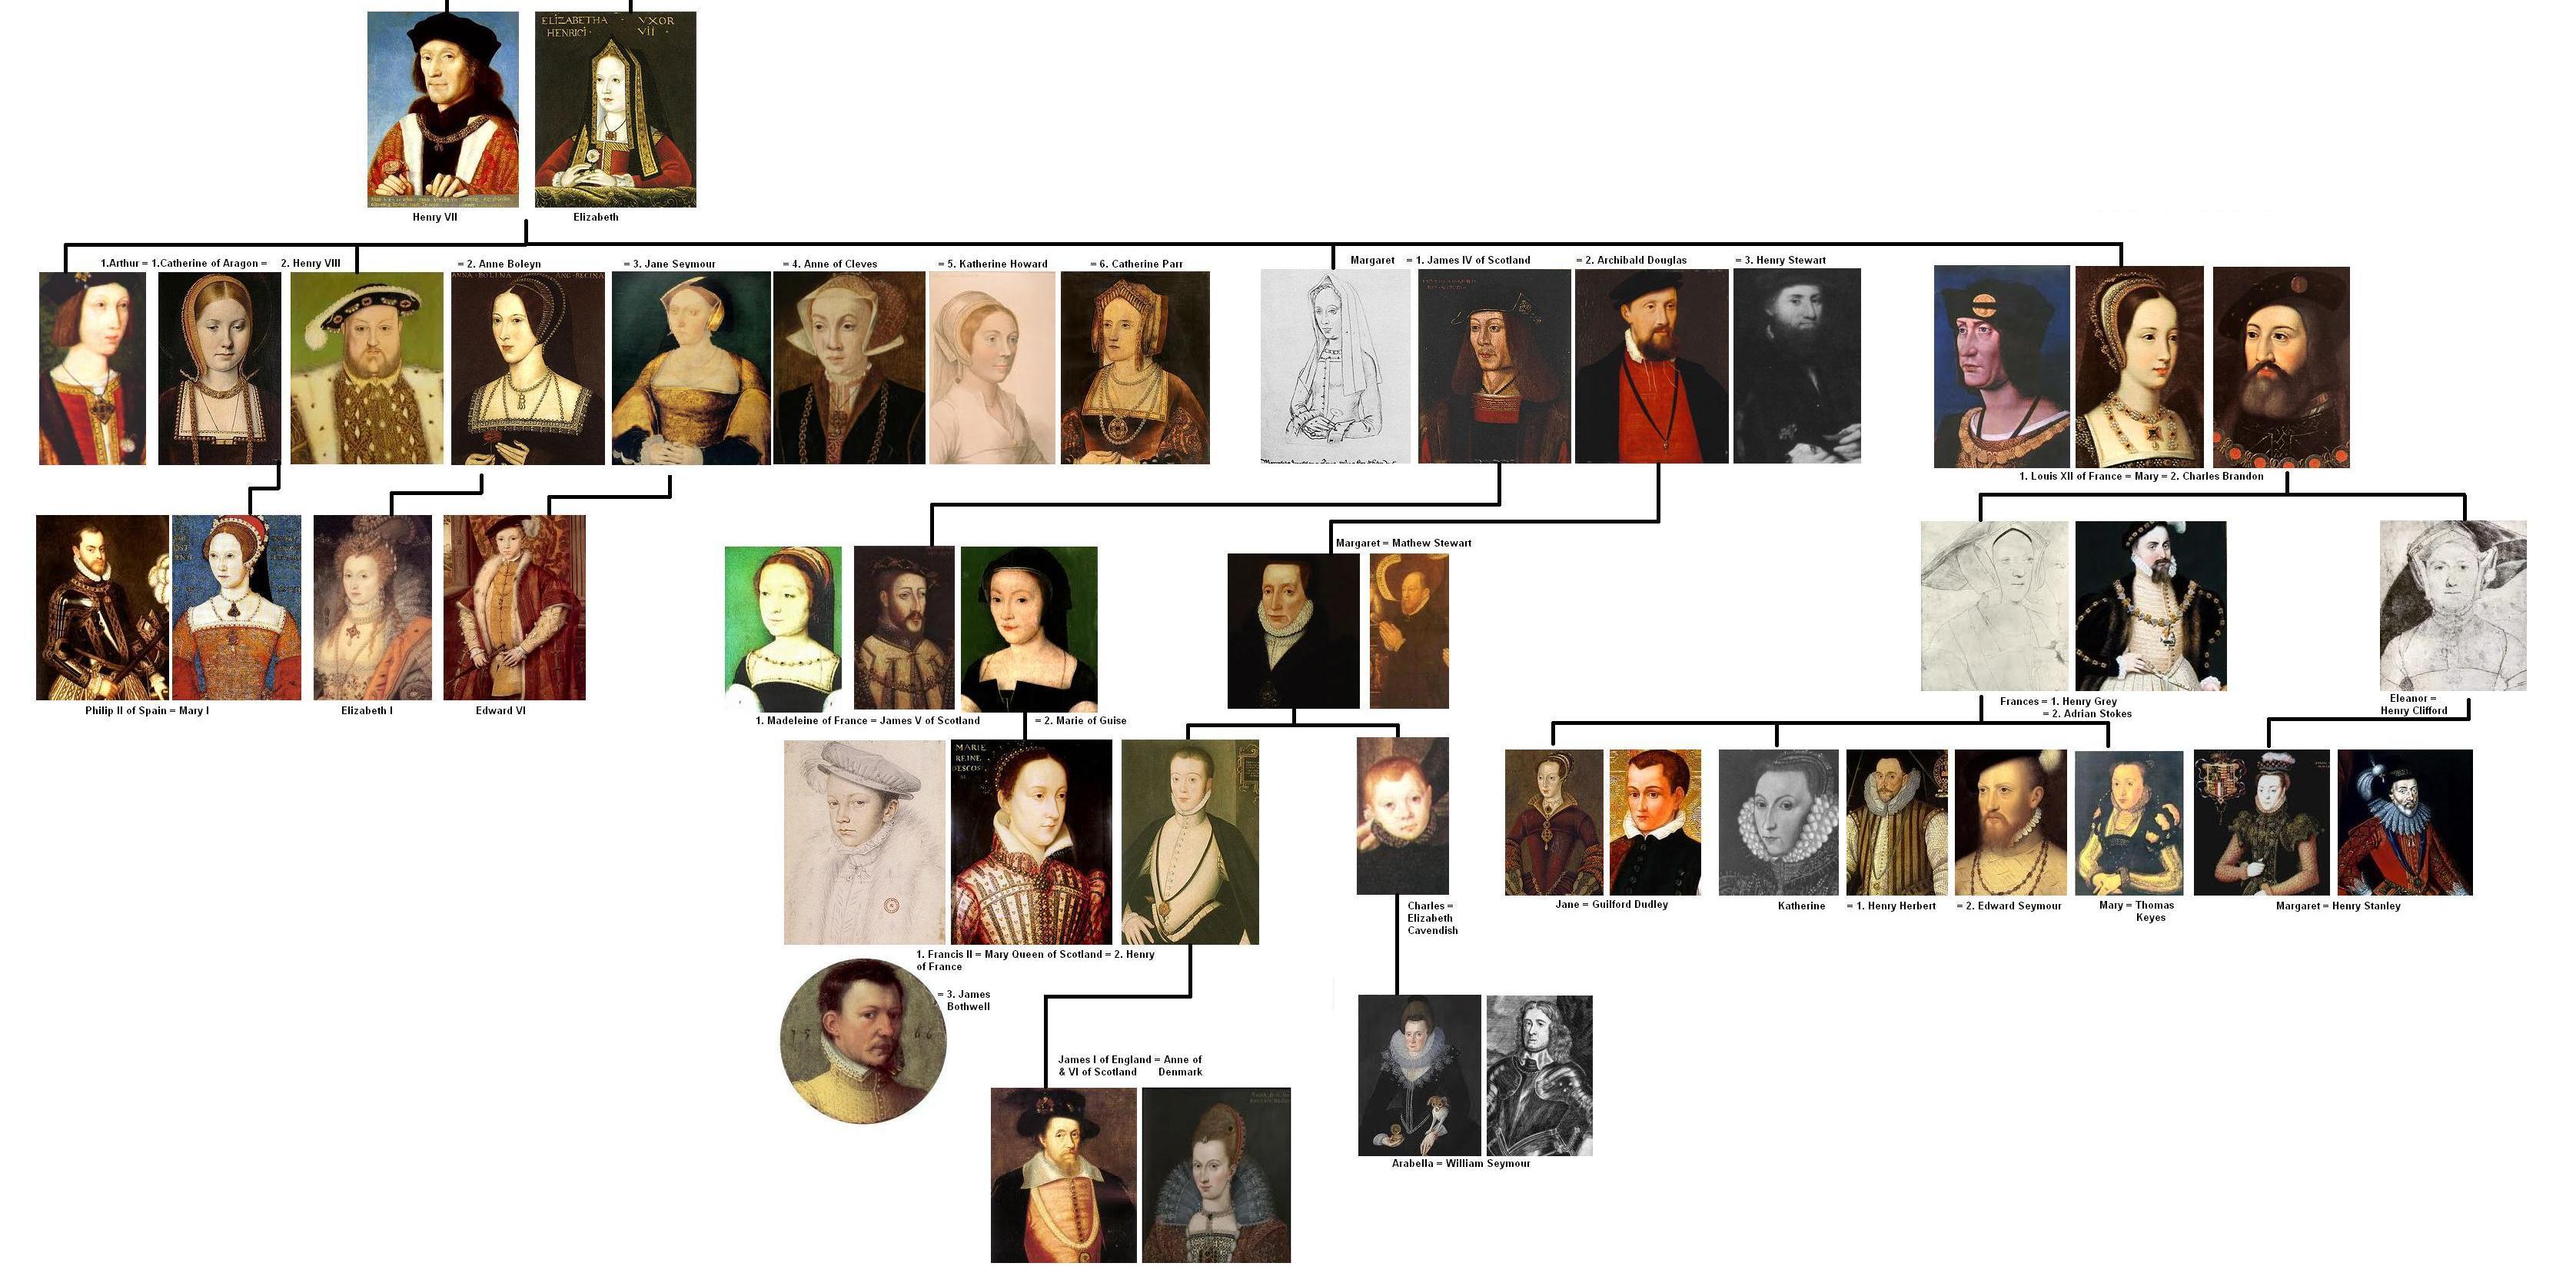 Tudor Royal Family